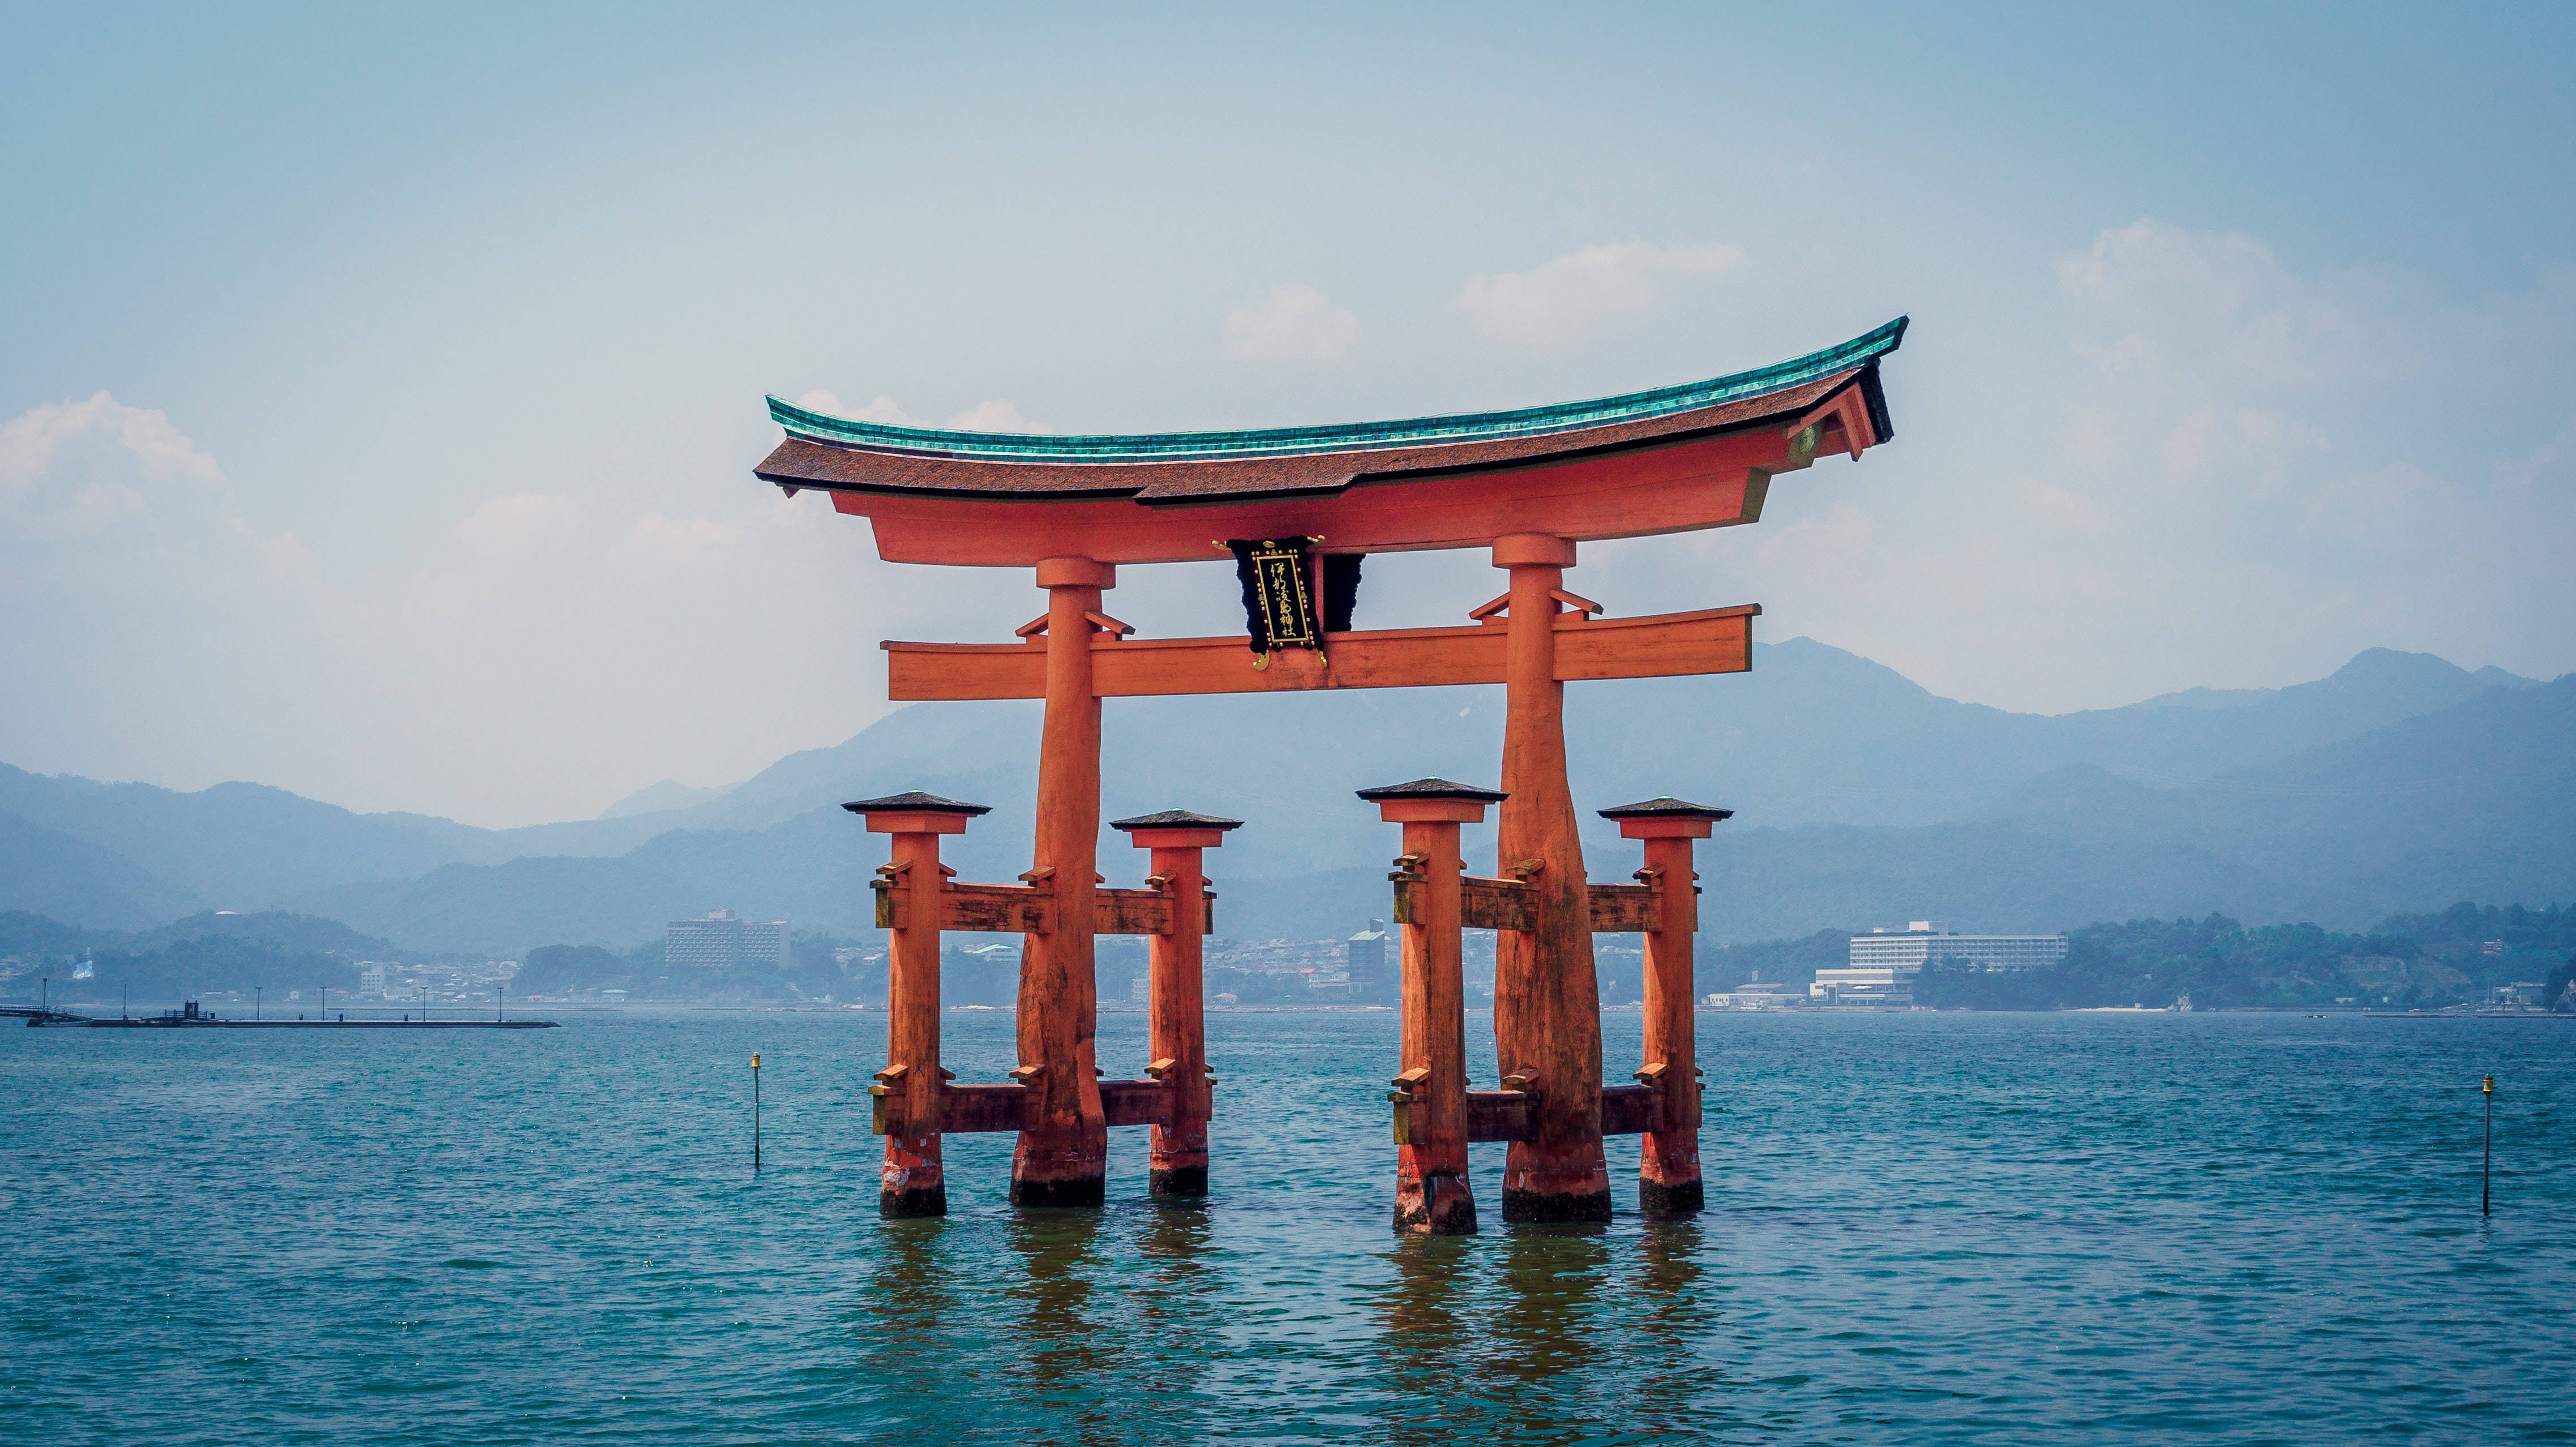 Japanese Hd Itsukushima Shrine Torii Gate Background